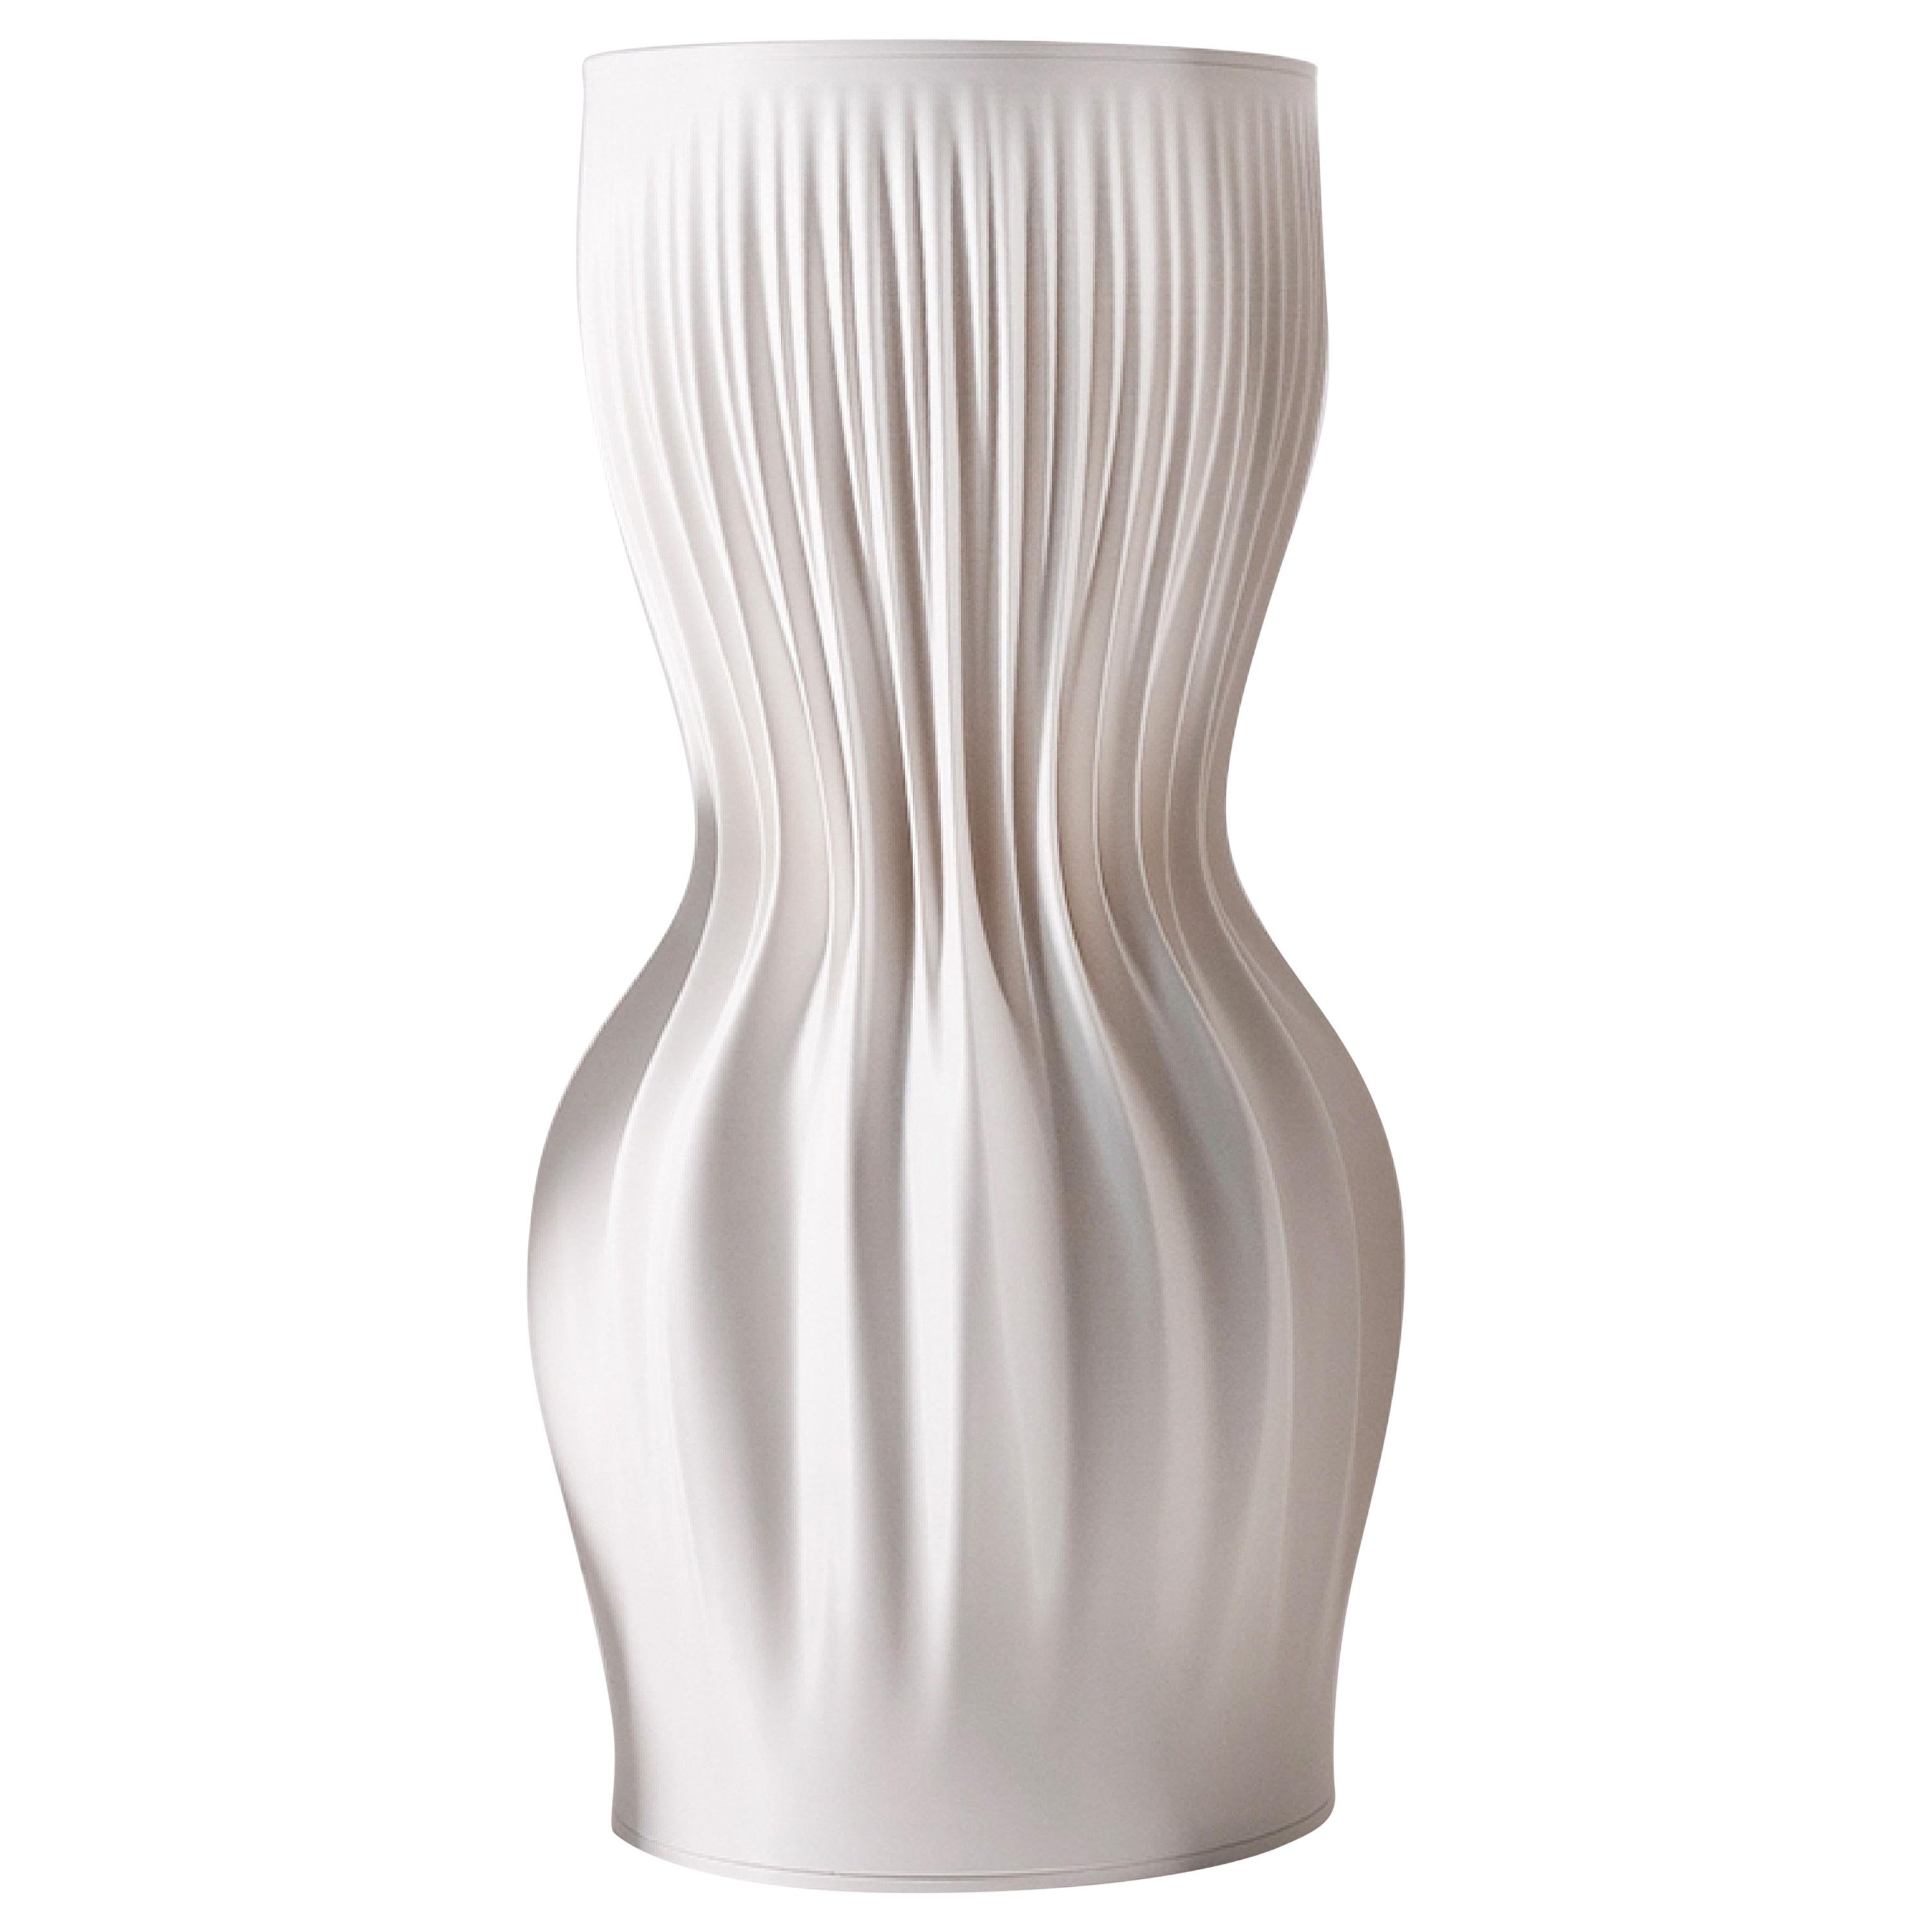  JK3D Lamella Pedestal Medium, 3d Printed Design by Julia Koerner  For Sale